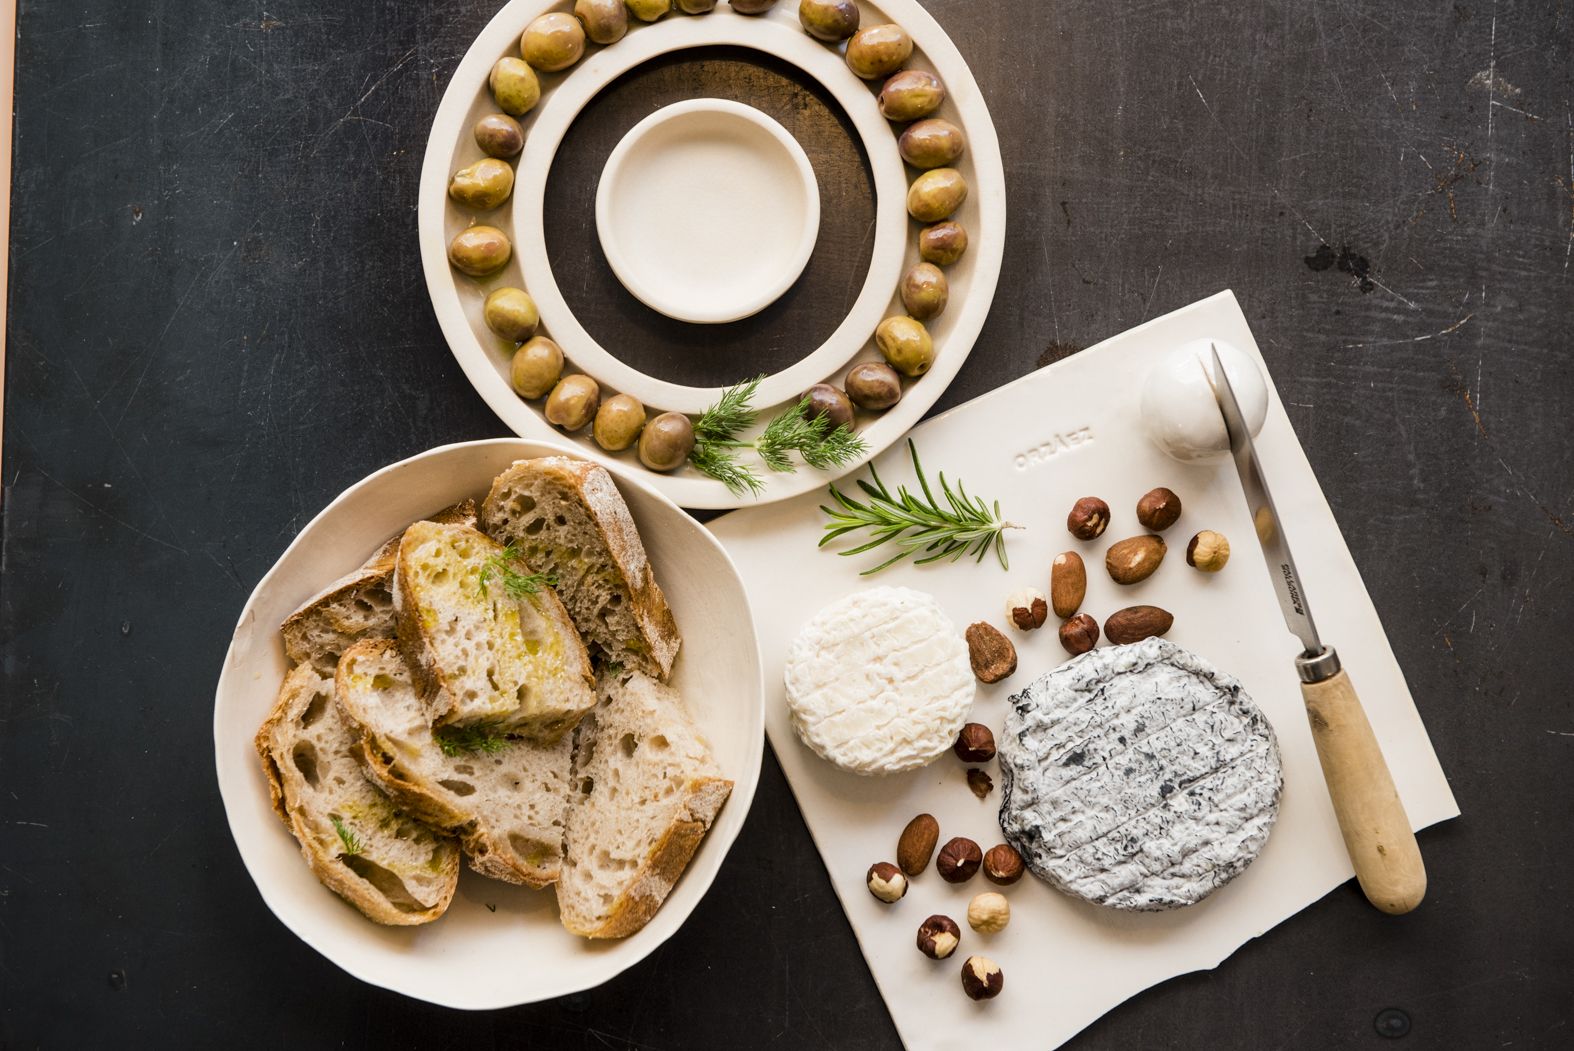 Aceitunas ecológicas, pan de masa madre y quesos de Mare Nostrum sobre los platos realizados por 'Virgen Cerámica'.   MAURI BUHIGAS